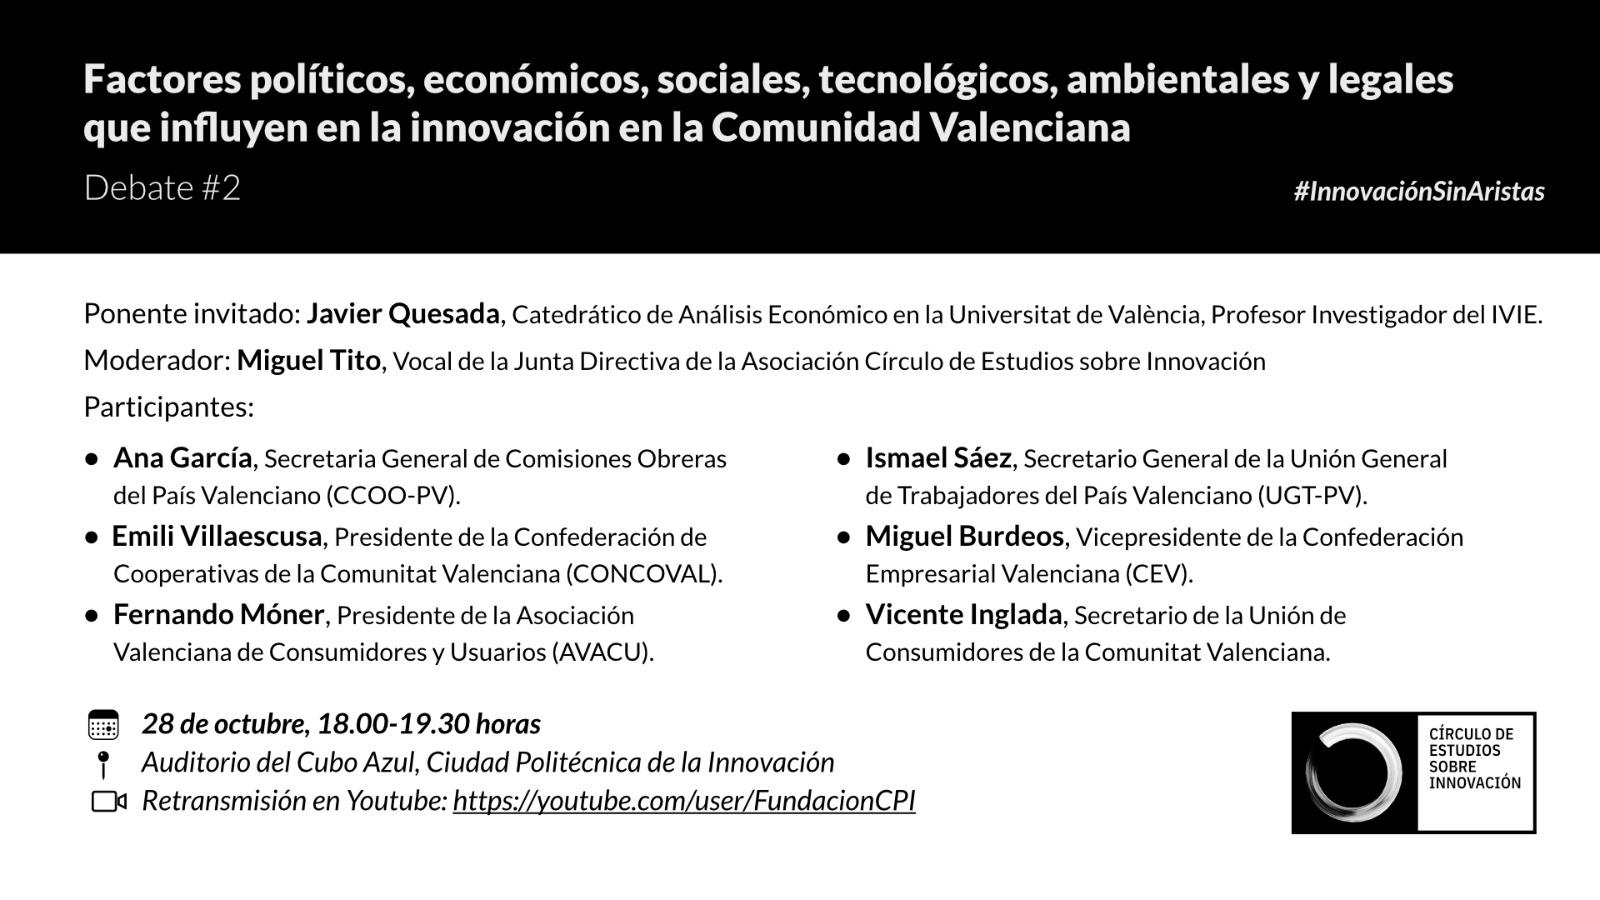 #InnovaciónSinAristas |Factores políticos, económicos, tecnológicos, ambientales y legales en la innovación de la Comunitat Valenciana